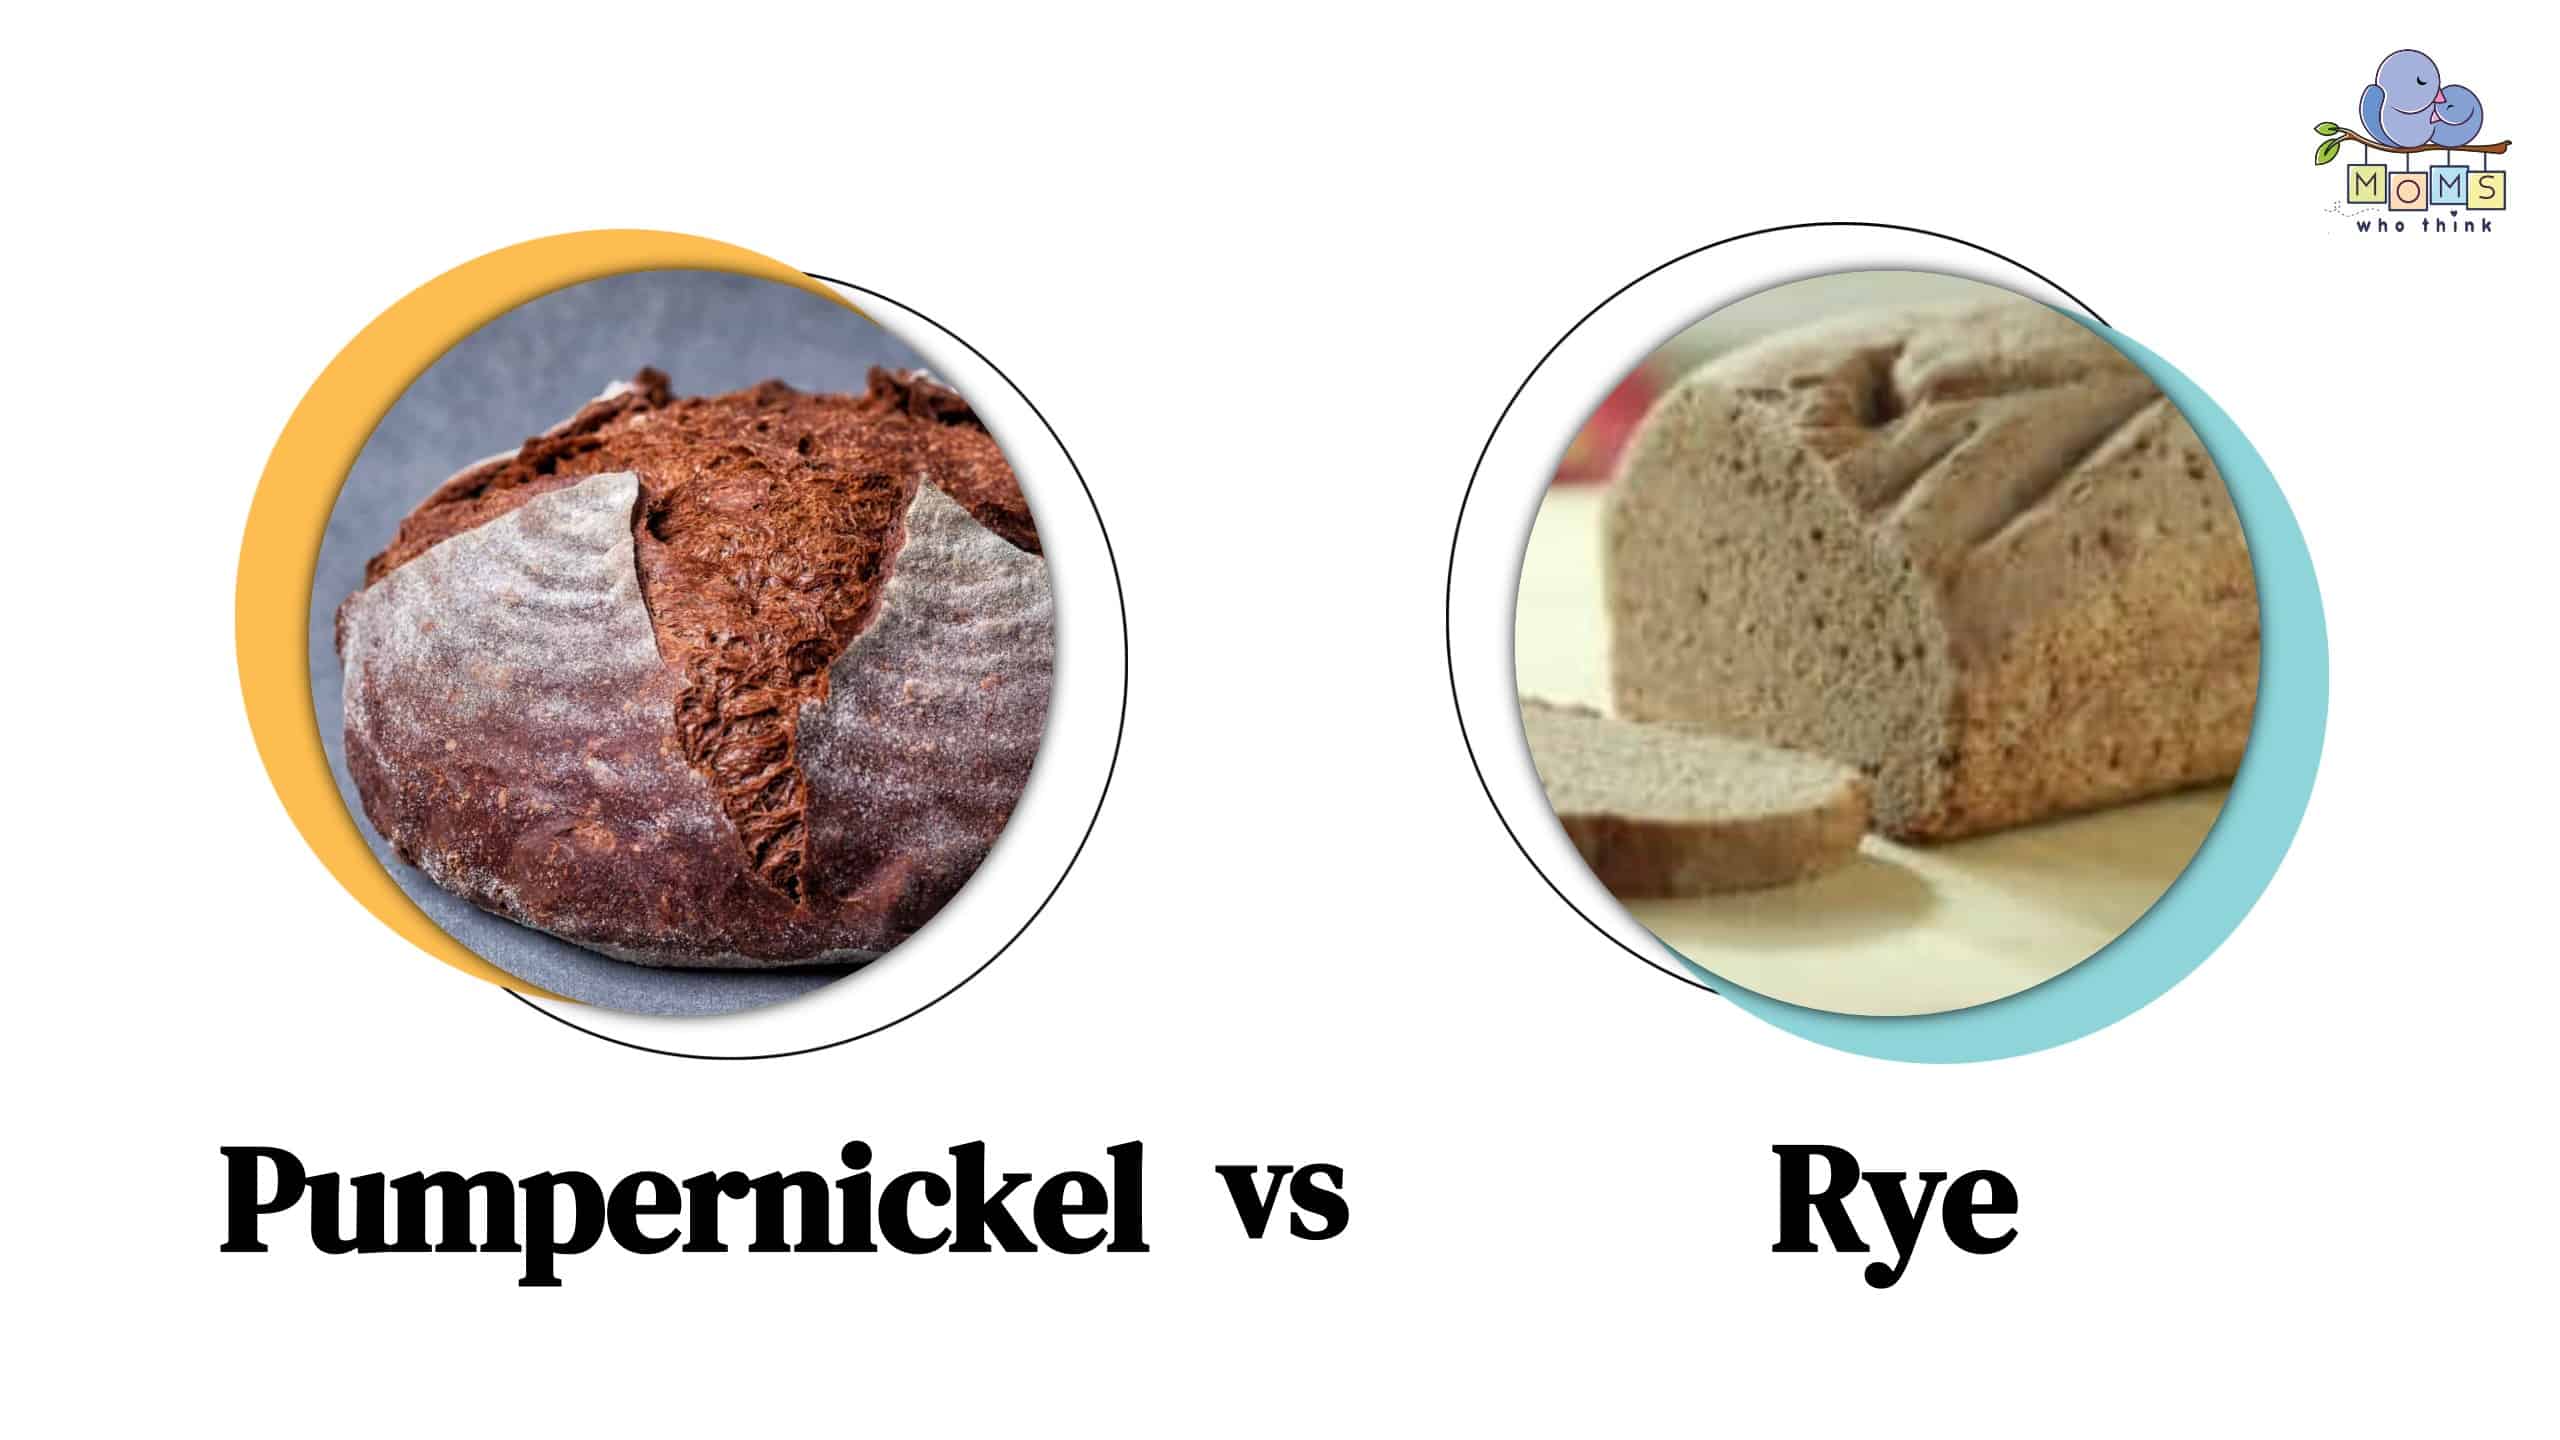 Pumpernickel vs Rye